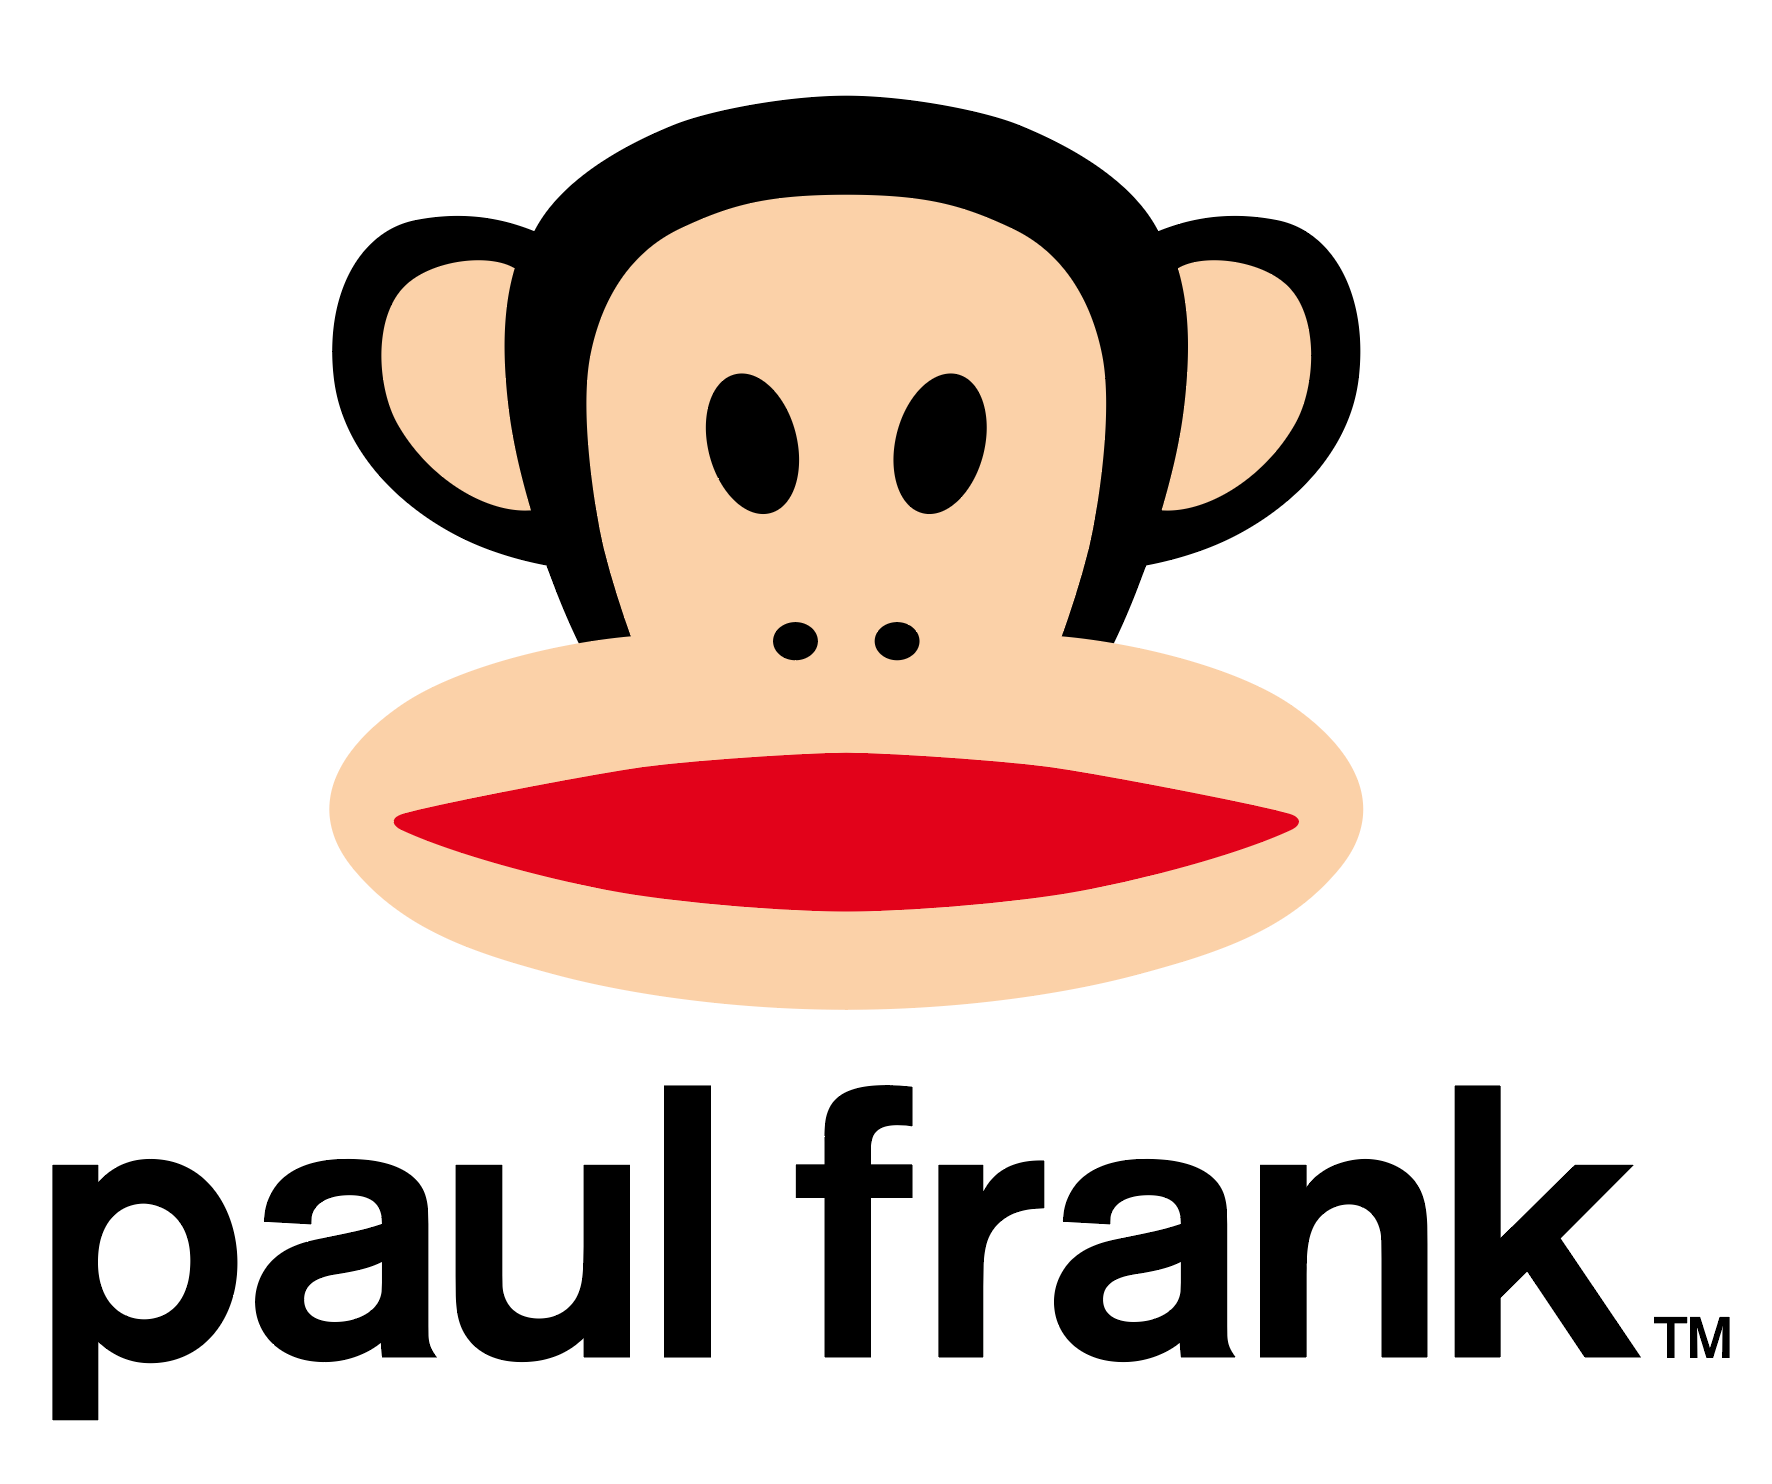 Cute Paul Frank Sock Monkey Iron On Patch